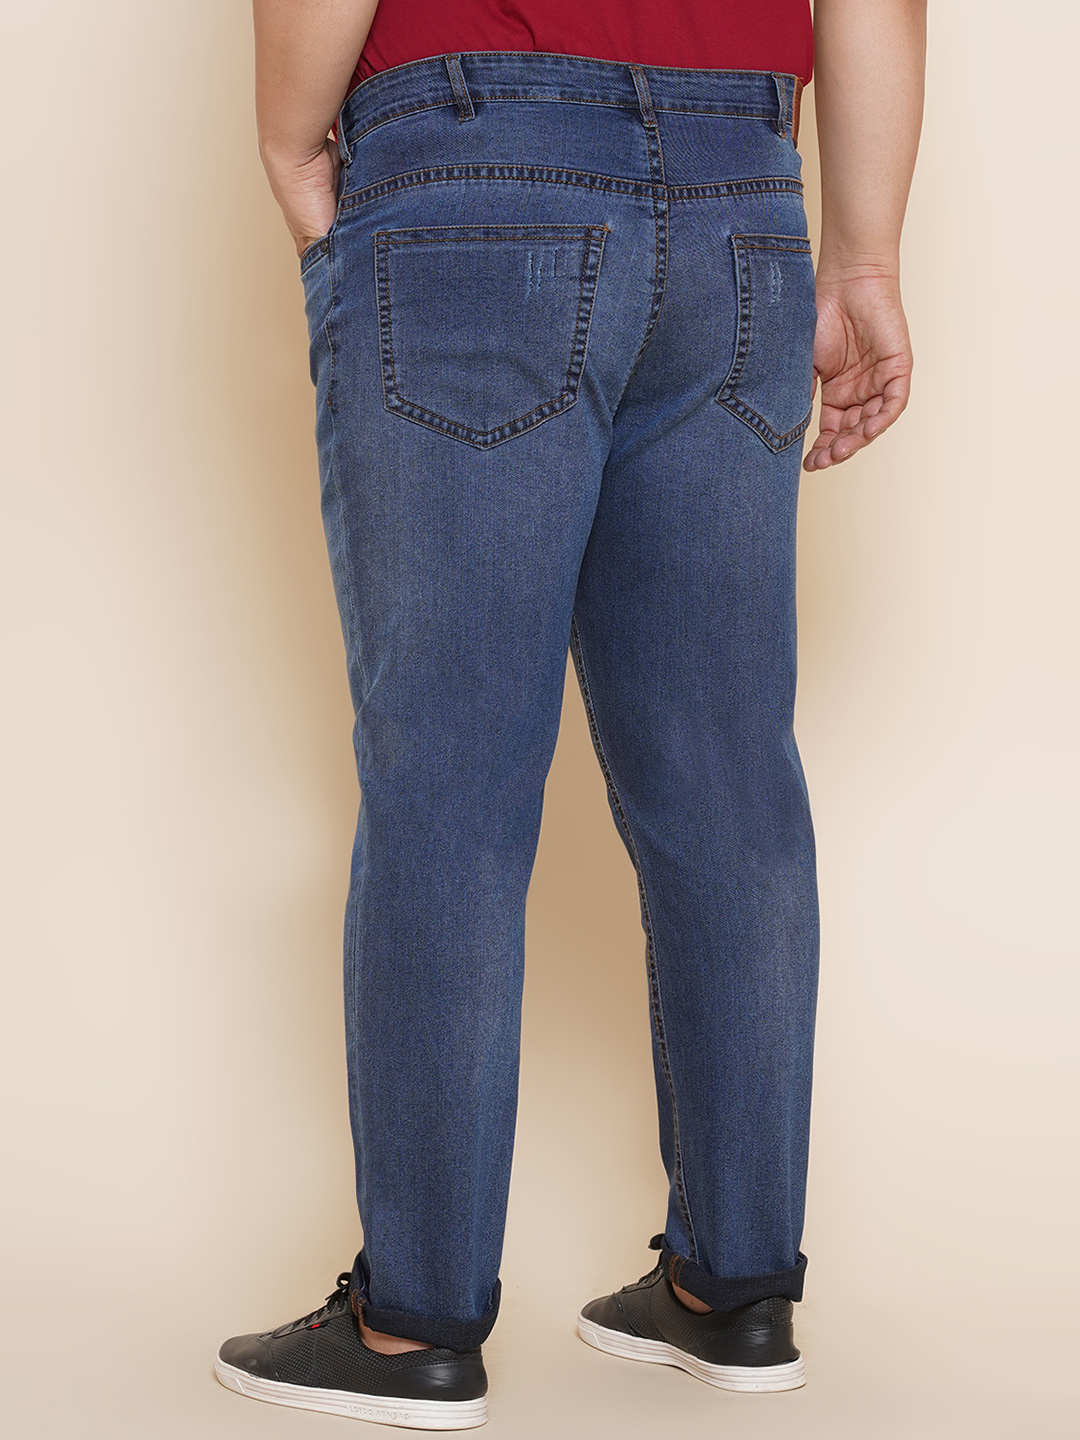 bottomwear/jeans/JPJ27017/jpj27017-5.jpg